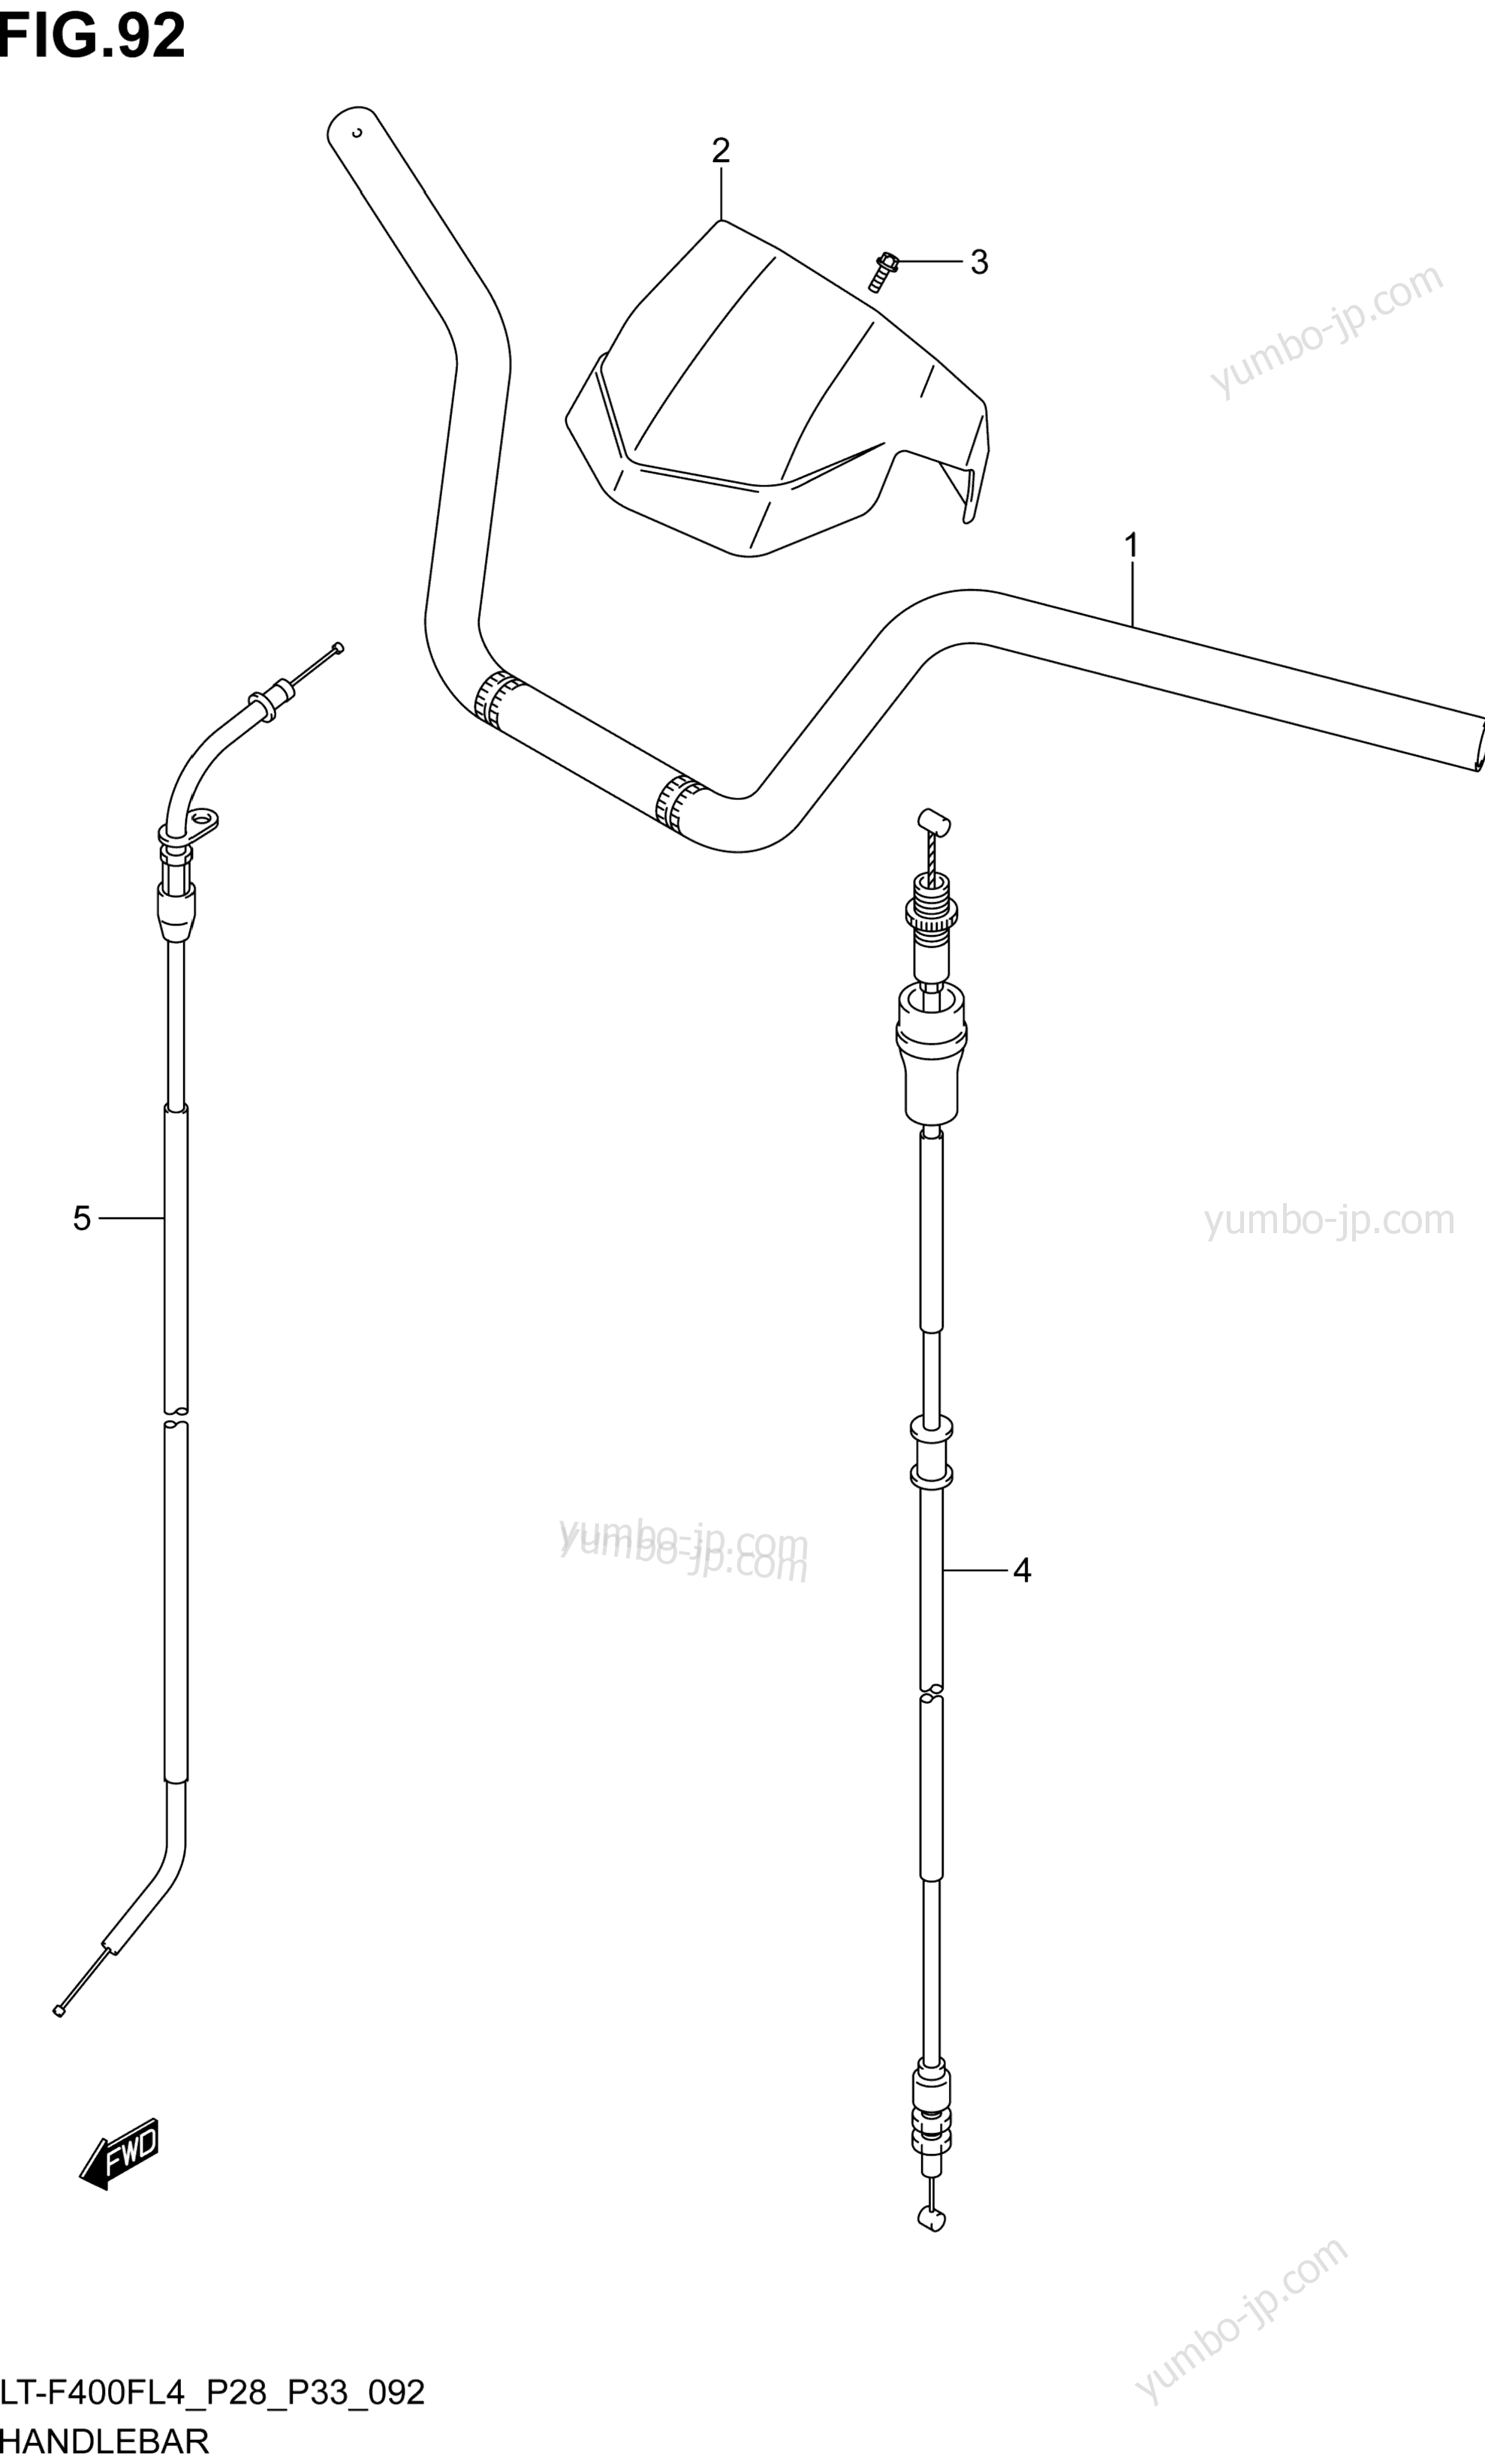 Румпель (рукоятка управления) для квадроциклов SUZUKI LT-F400F 2014 г.